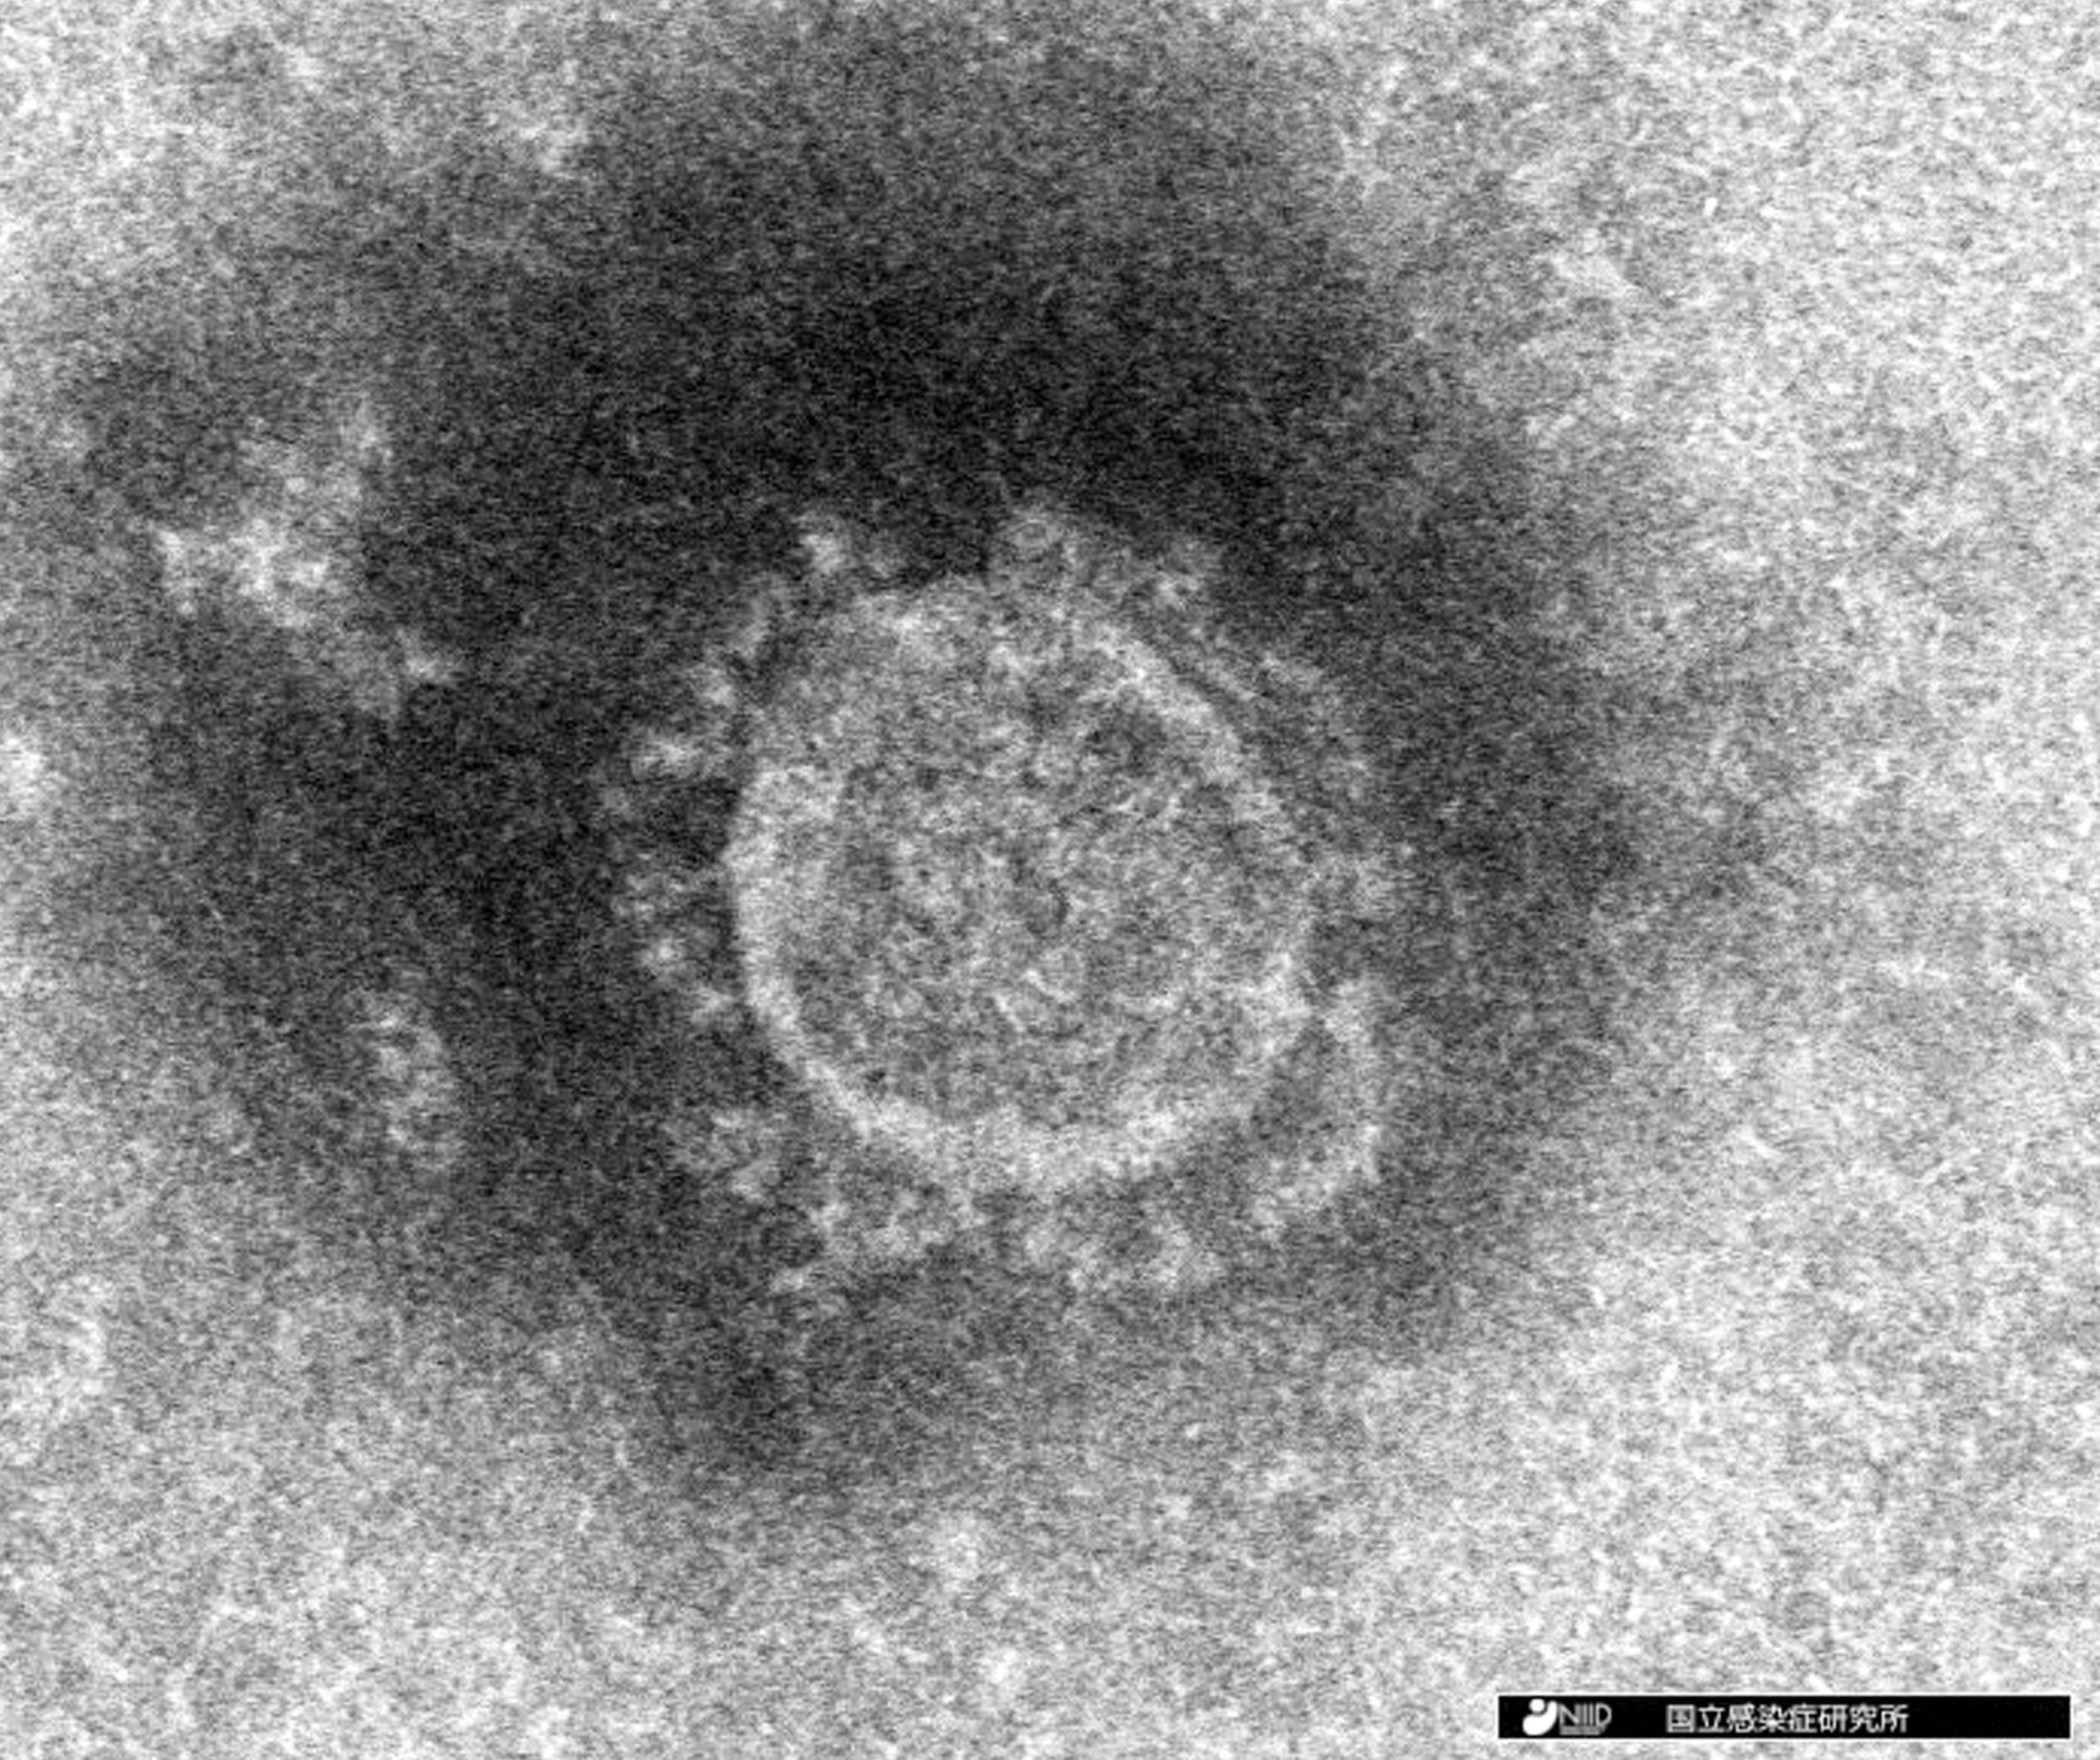 コロナウイルスの電子顕微鏡写真